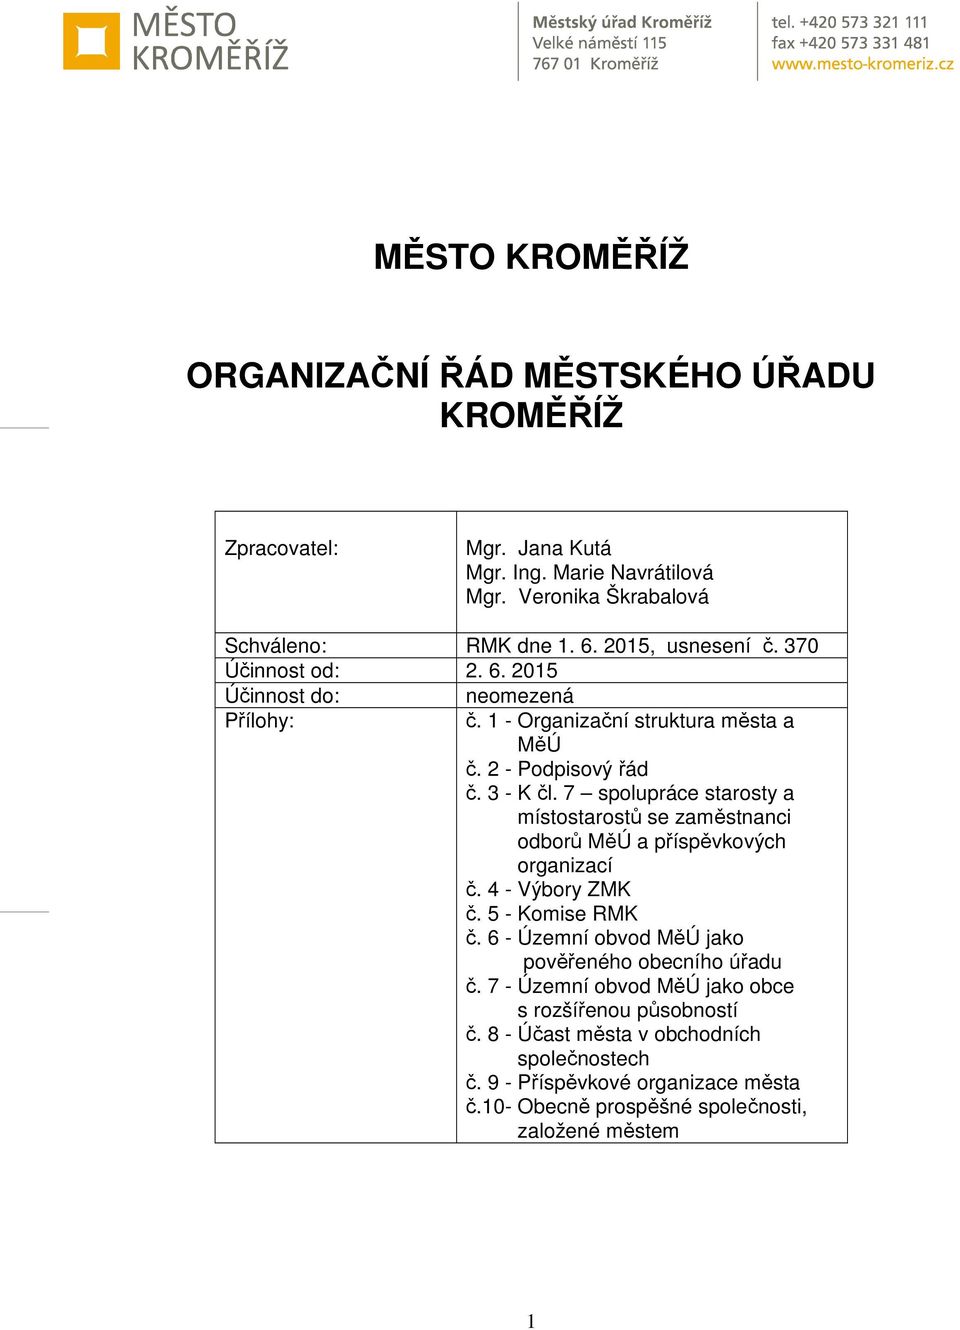 7 spolupráce starosty a místostarostů se zaměstnanci odborů MěÚ a příspěvkových organizací č. 4 - Výbory ZMK č. 5 - Komise RMK č.